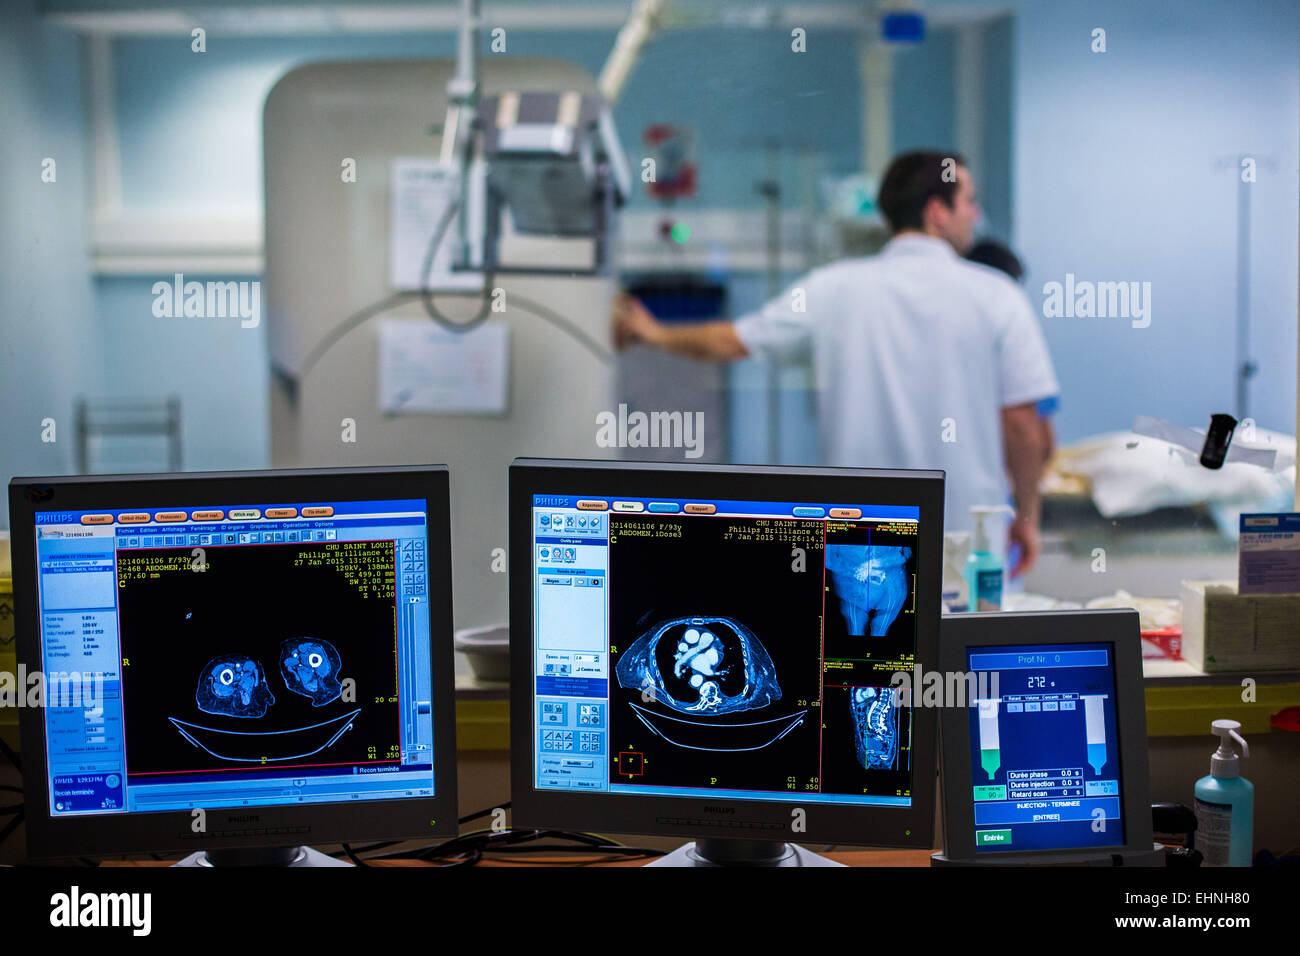 Tomodensitométrie assistée de la cryothérapie pour détruire une tumeur rénale, hôpital Saint-Louis, Paris, France. Banque D'Images